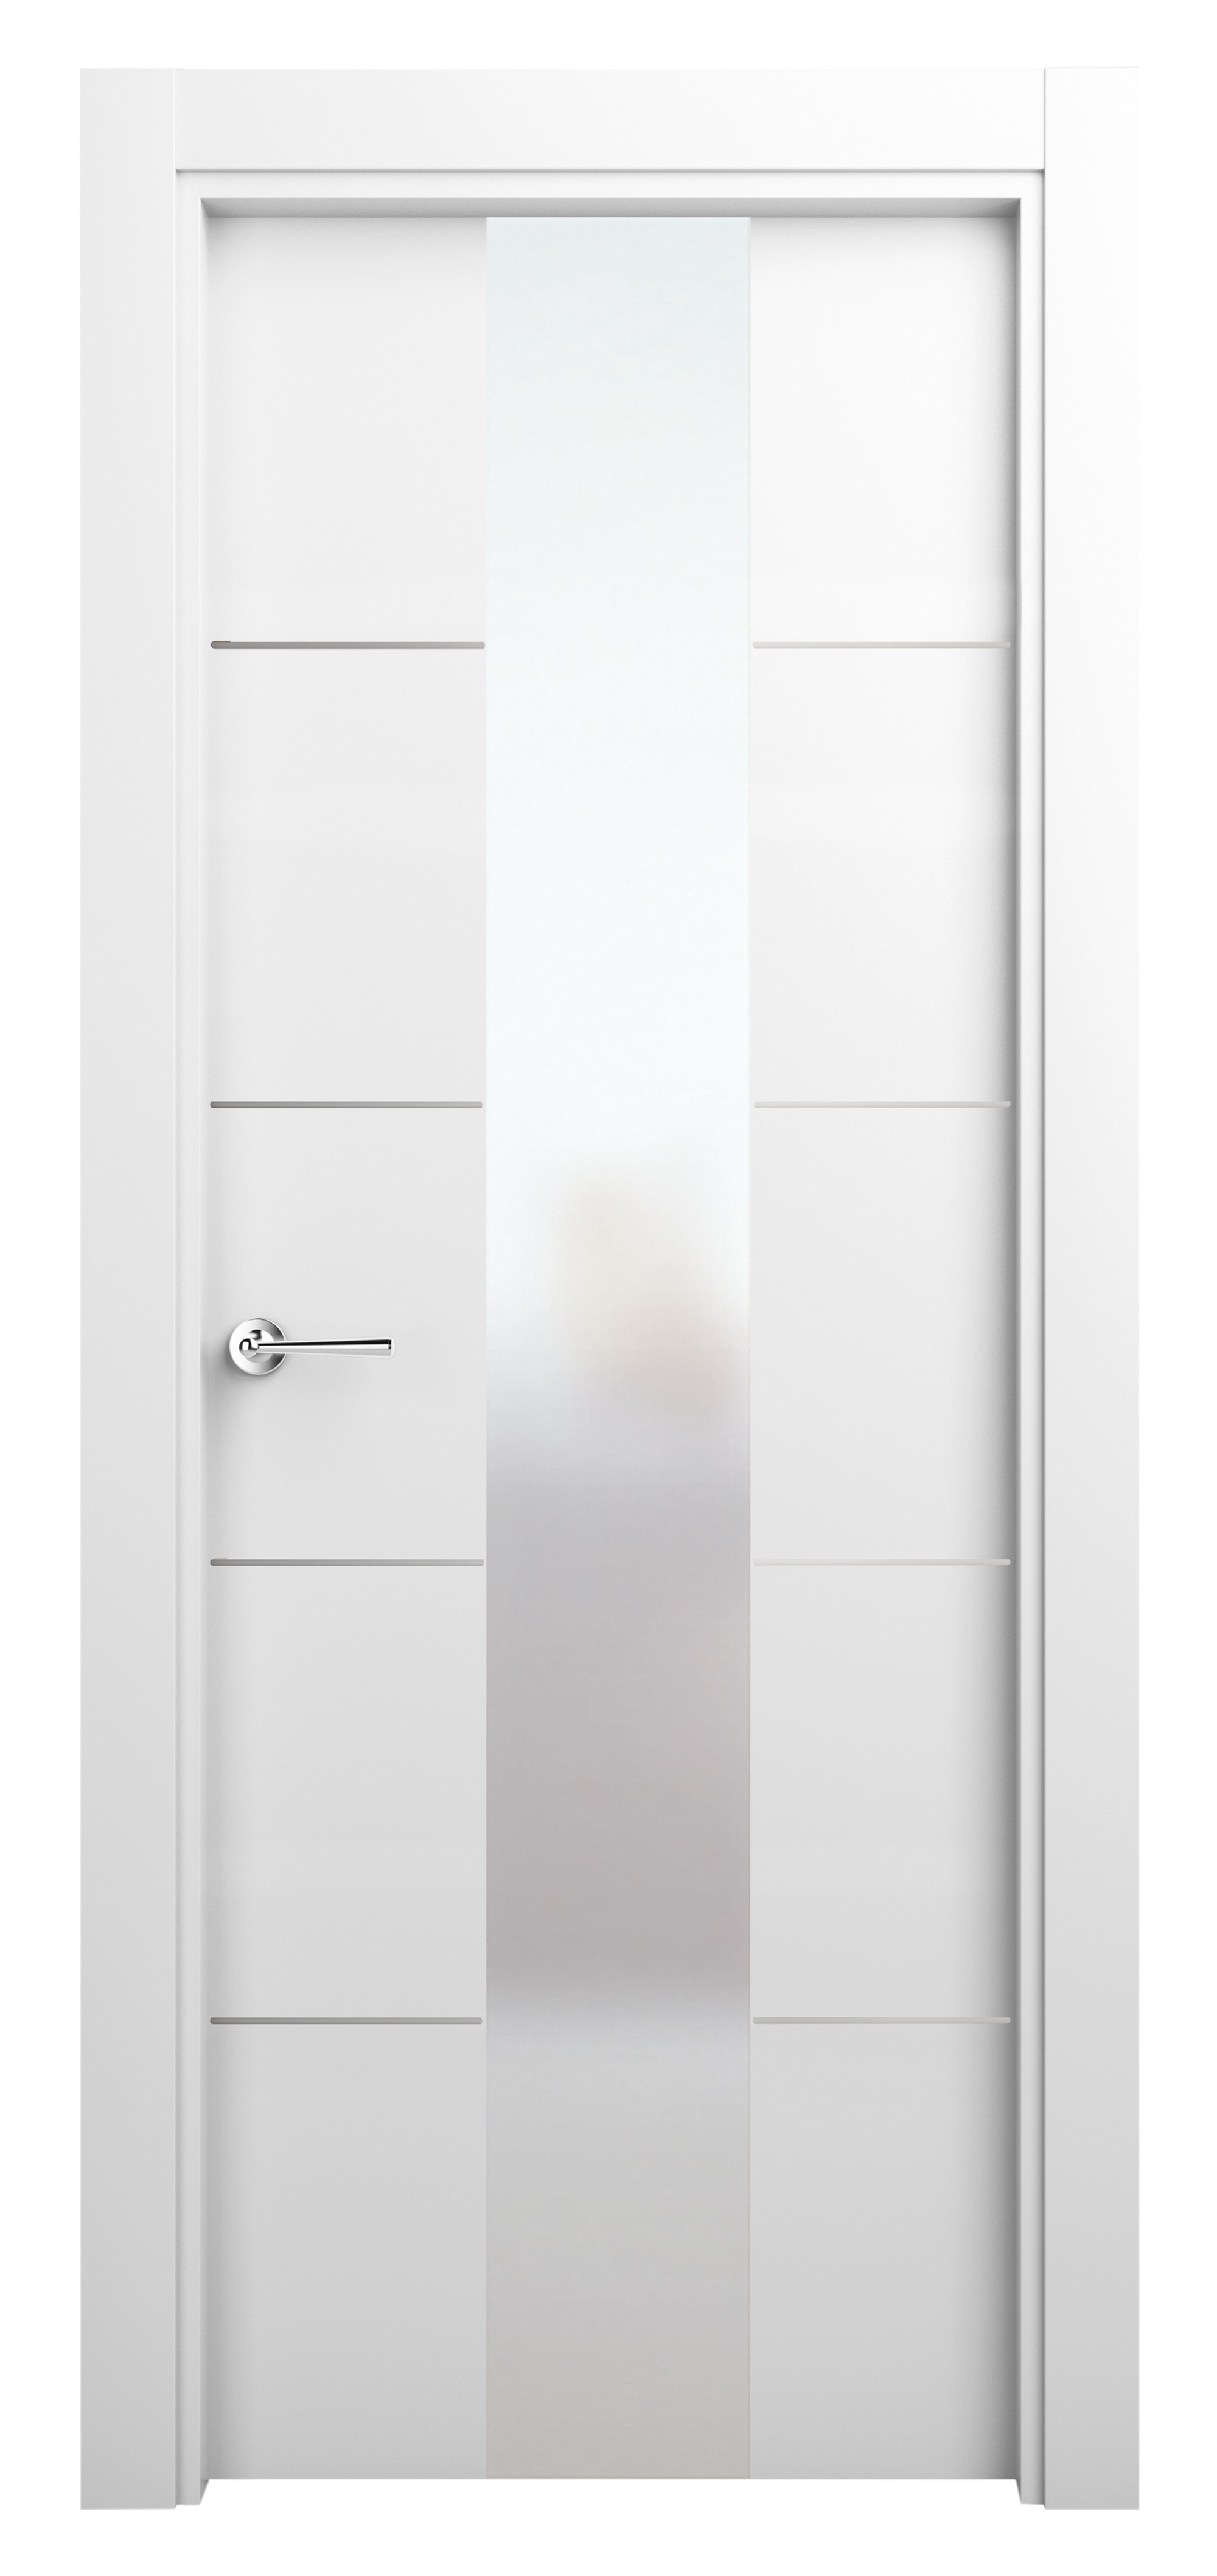 Puerta abatible paris blanca premium apertura derecha de 82.5 cm